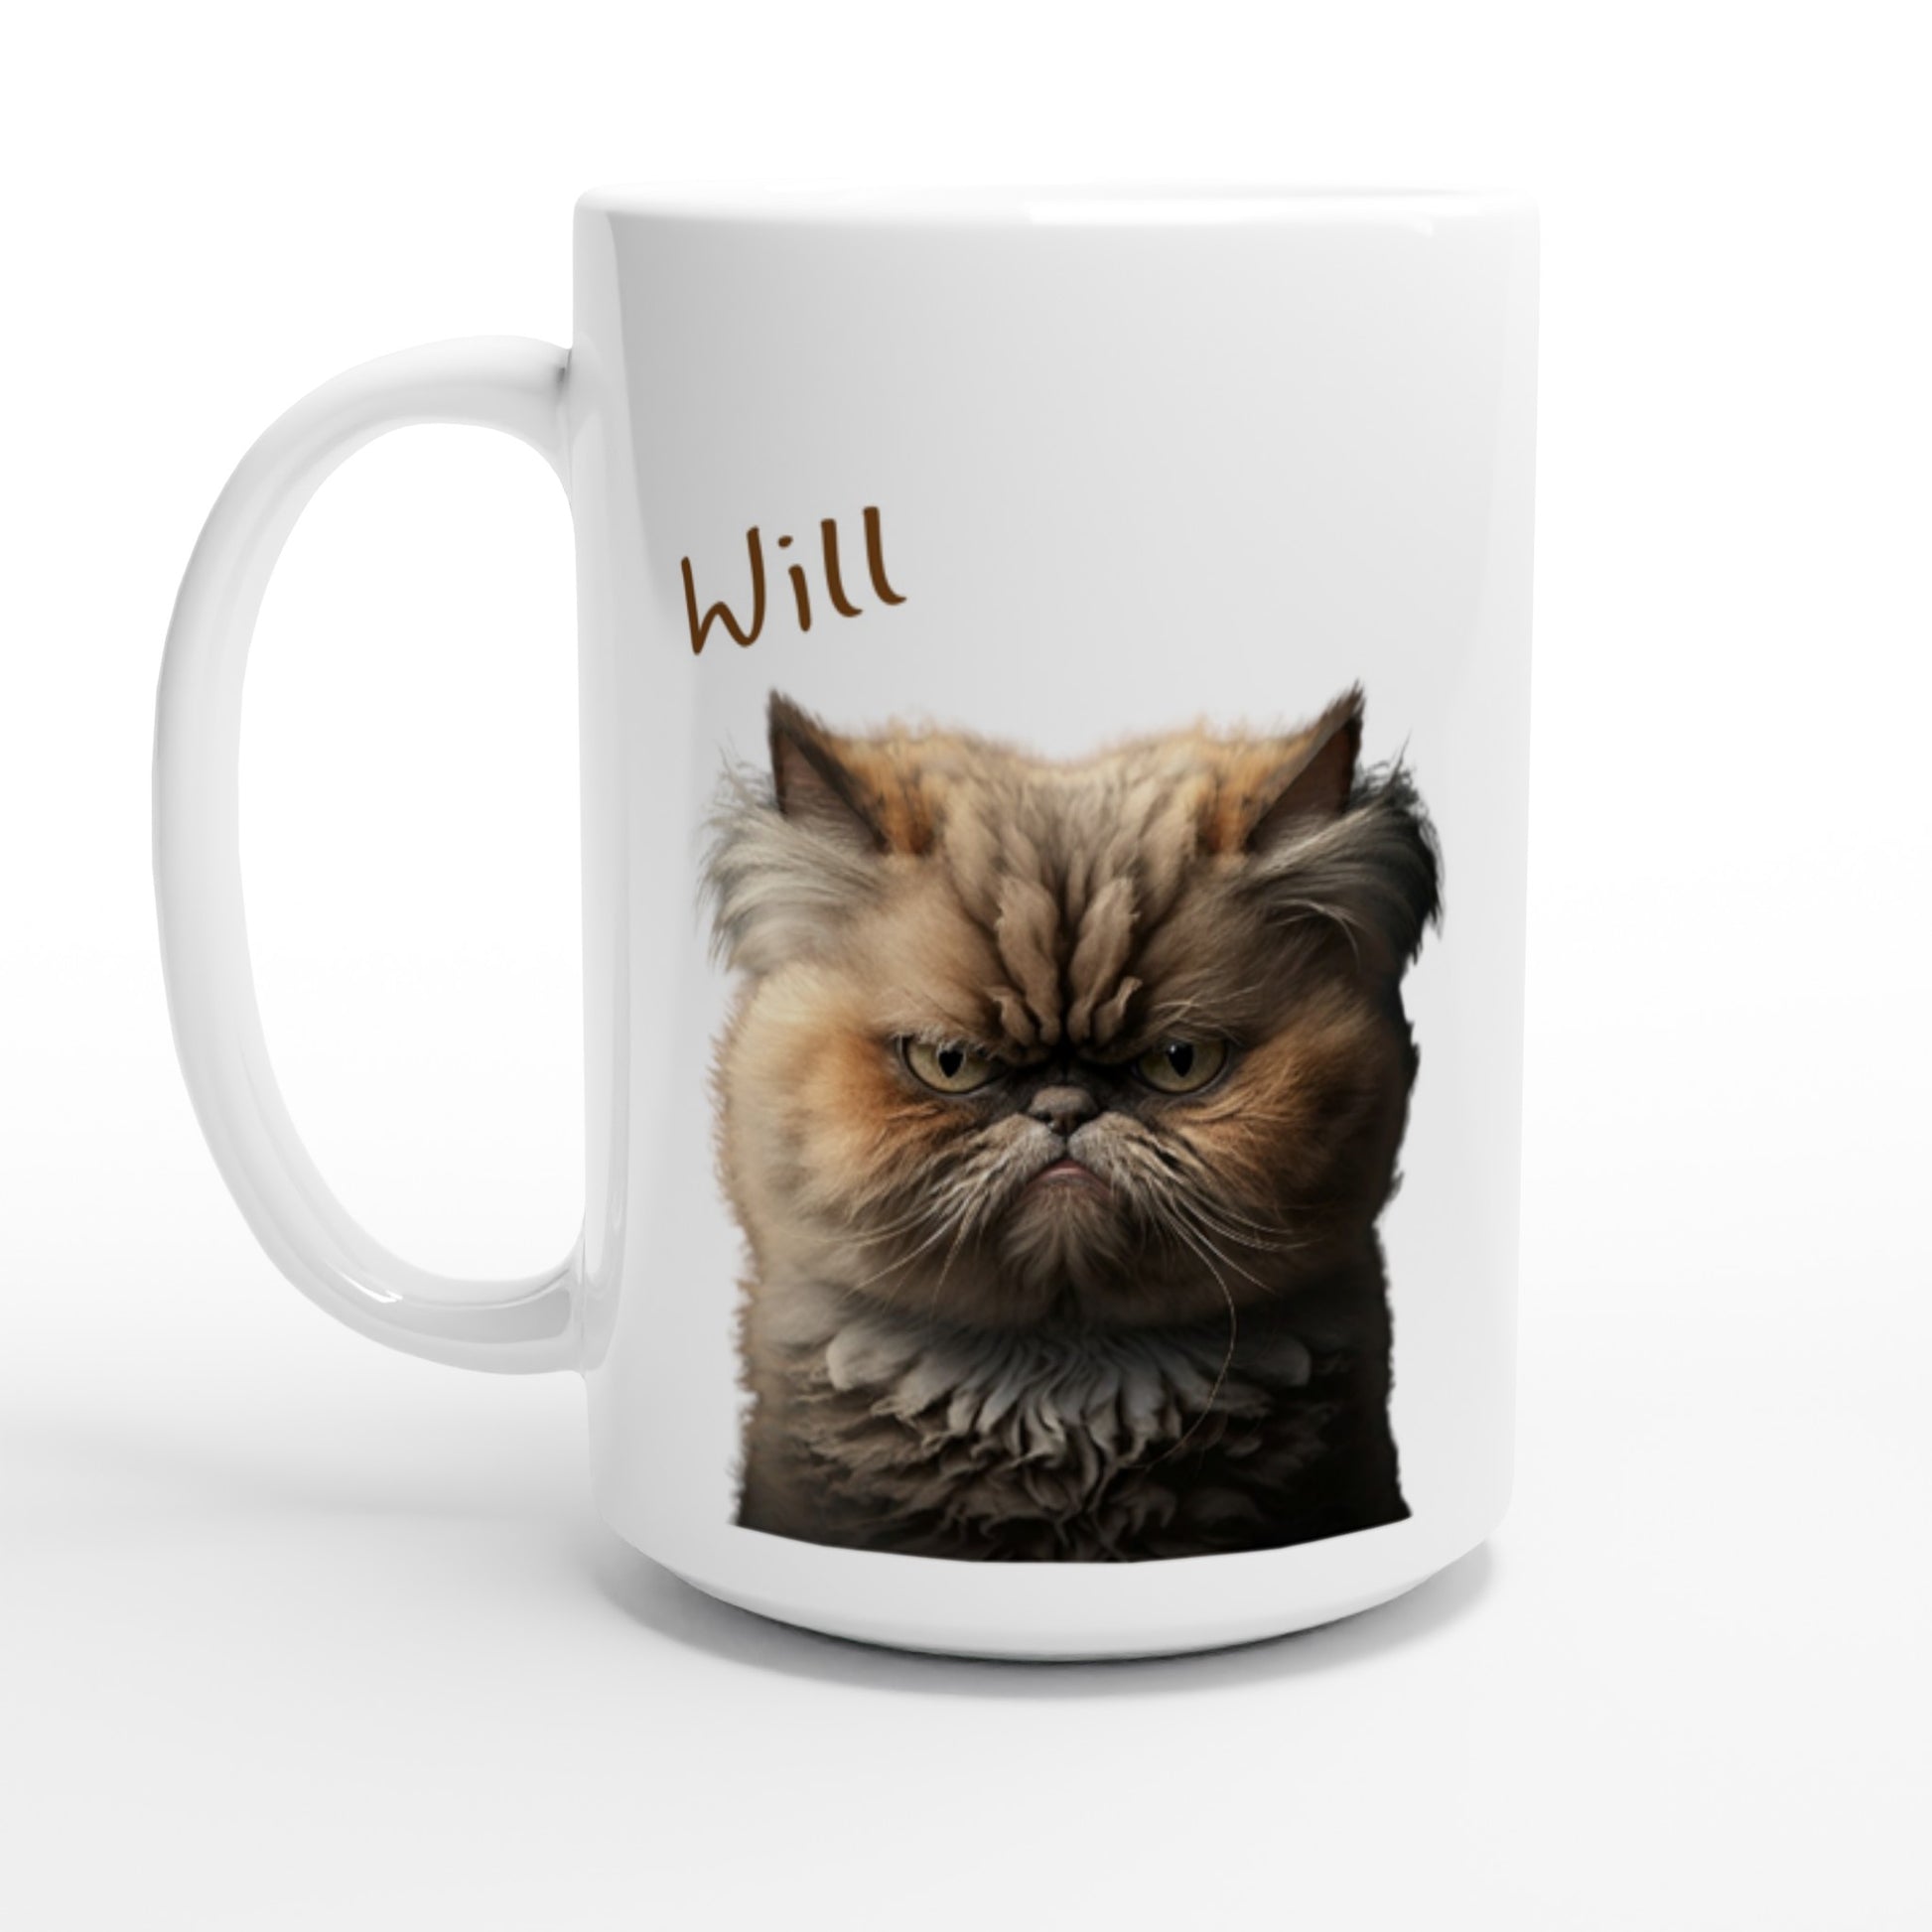 Grumpy cat mug with name